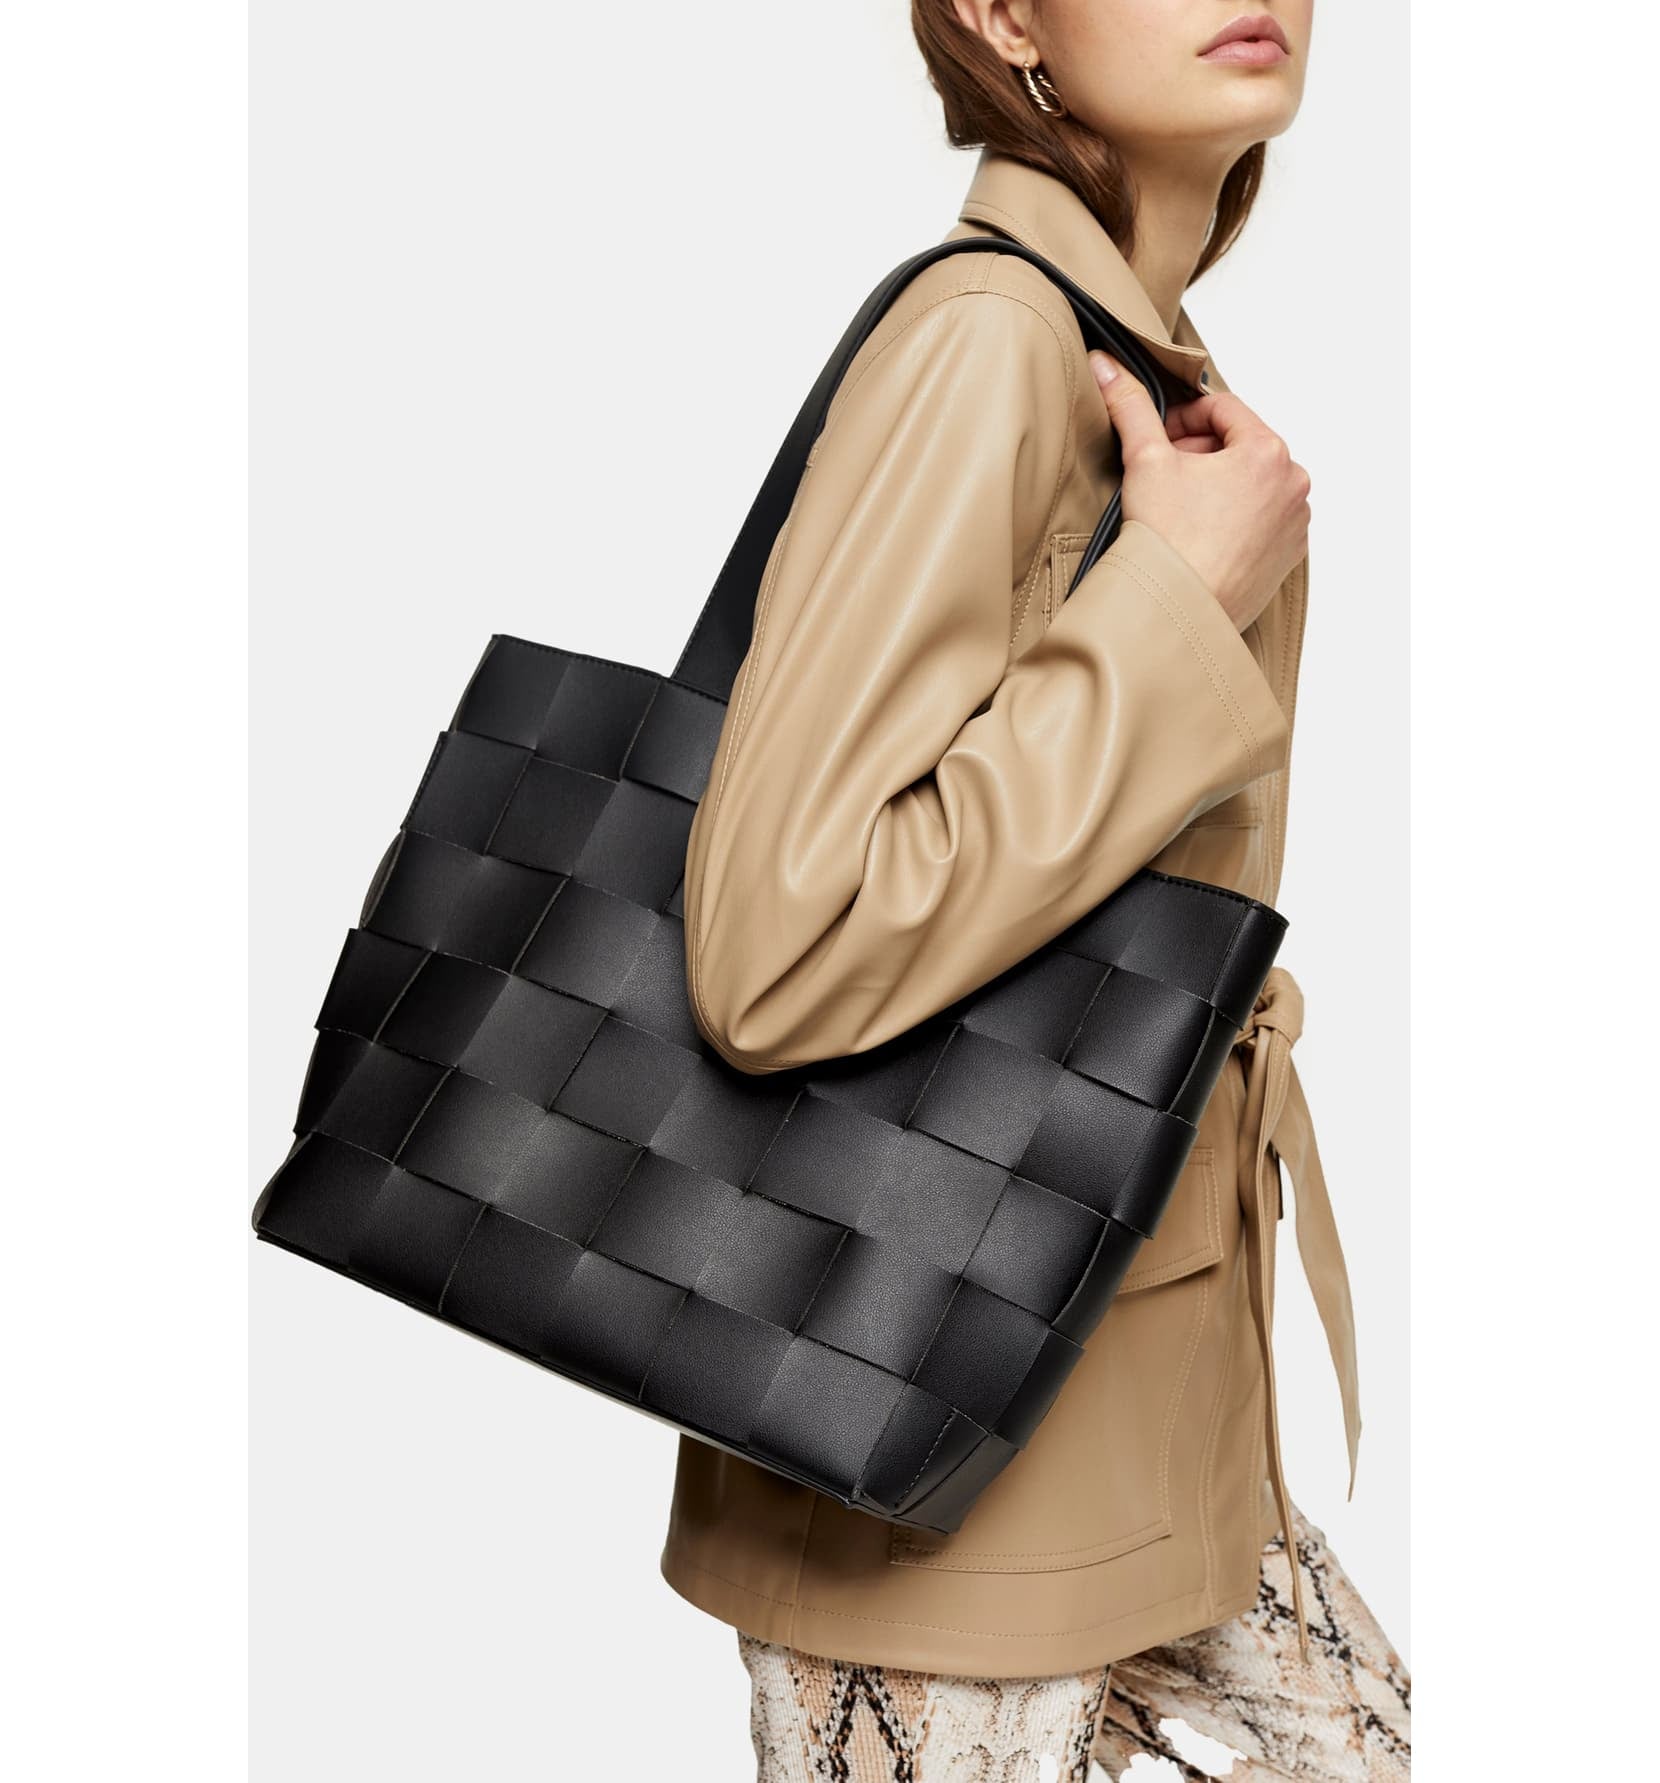 Kasgo Fashion PU Leather Handbag Large Shoulder Bag Tote Bag Hobo Bag for Women